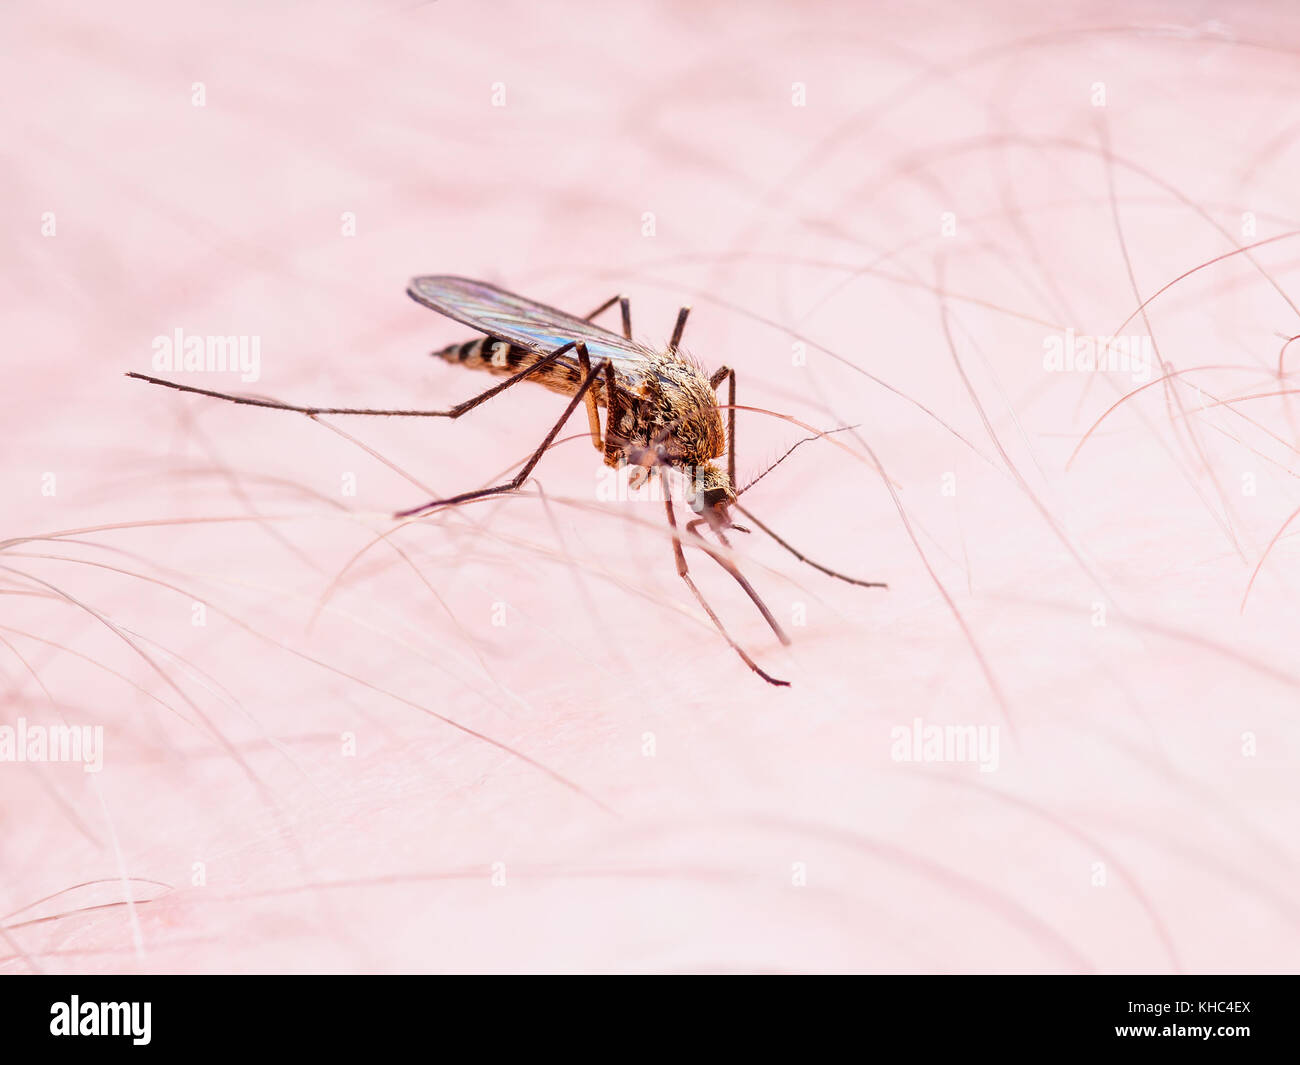 Malaria or Zika Virus Infected Mosquito Sting Stock Photo